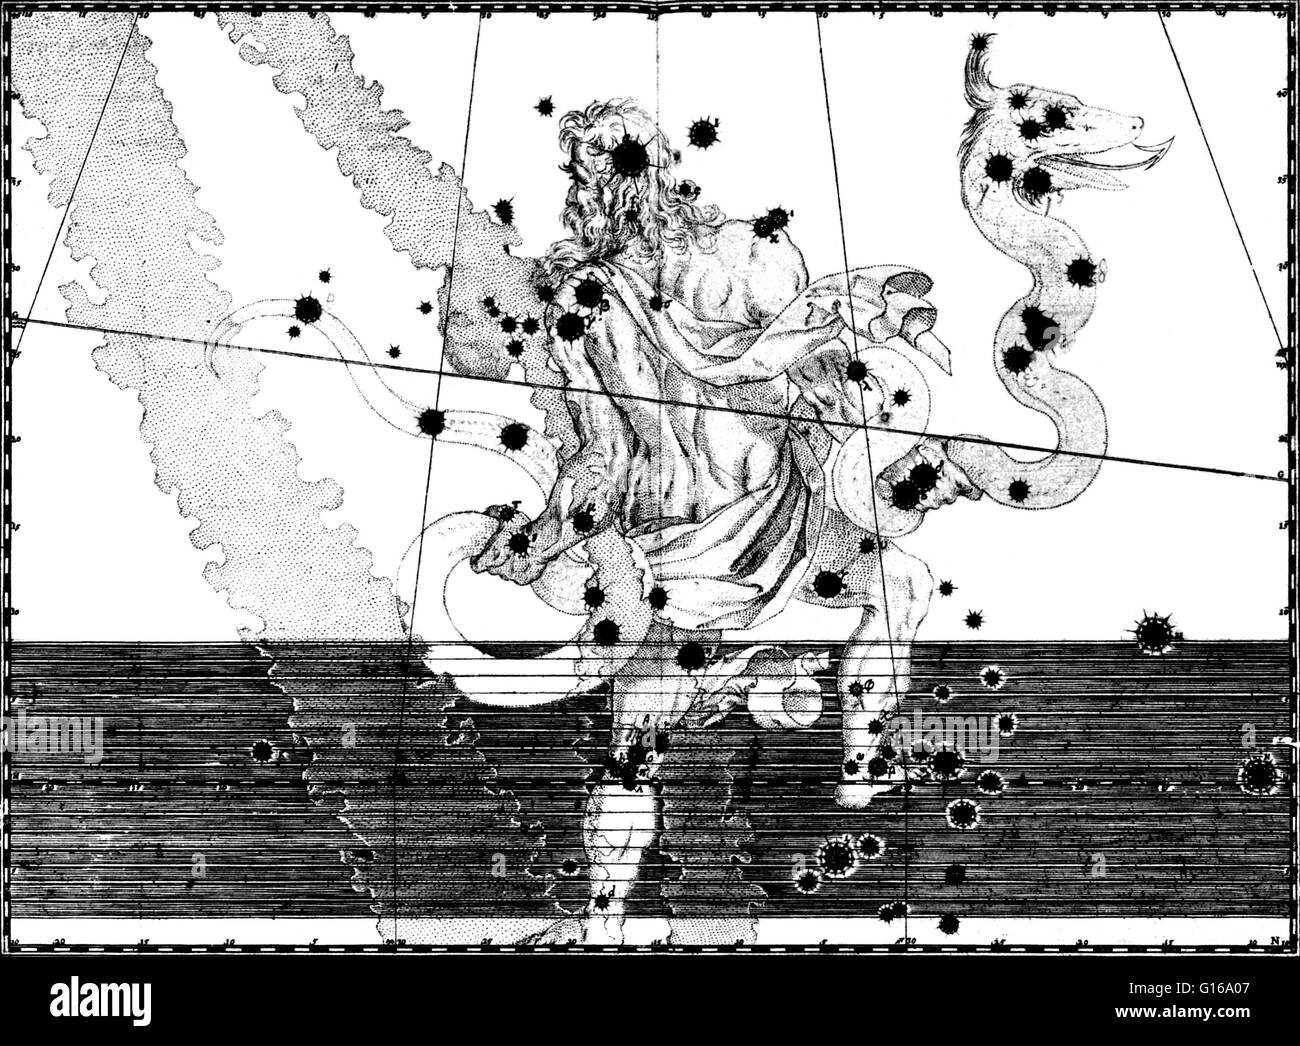 Costellazione di Ofiuco da Johann Bayer star atlas Uranometria Omnium Asterismorum, 1603. Ofiuco è una costellazione di grandi dimensioni situato intorno all'equatore celeste. Ofiuco era uno dei 48 costellazioni elencate dal II secolo astronomo Tolomeo, Foto Stock